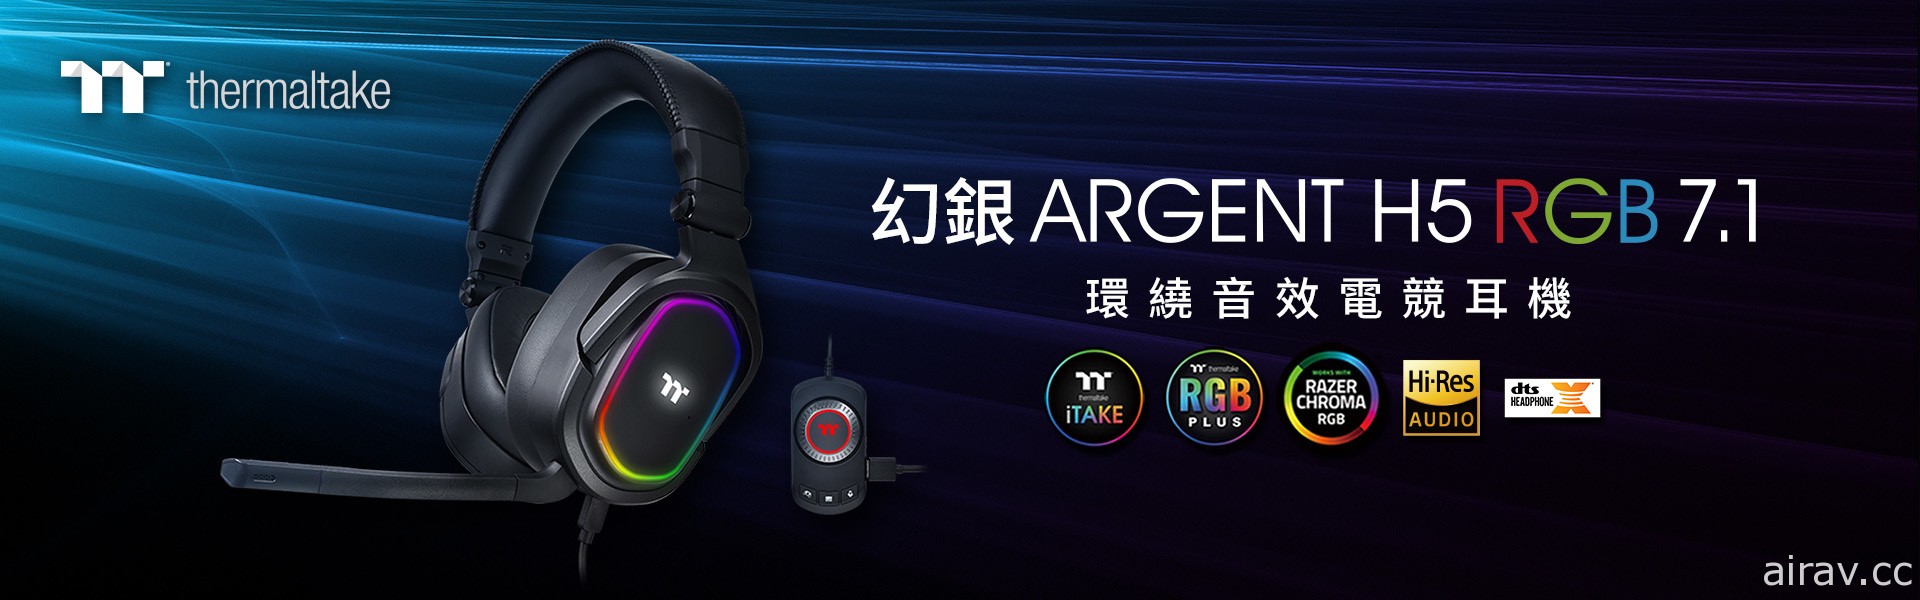 曜越幻银 ARGENT H5 RGB 7.1 环绕音效电竞耳机 8 月上市